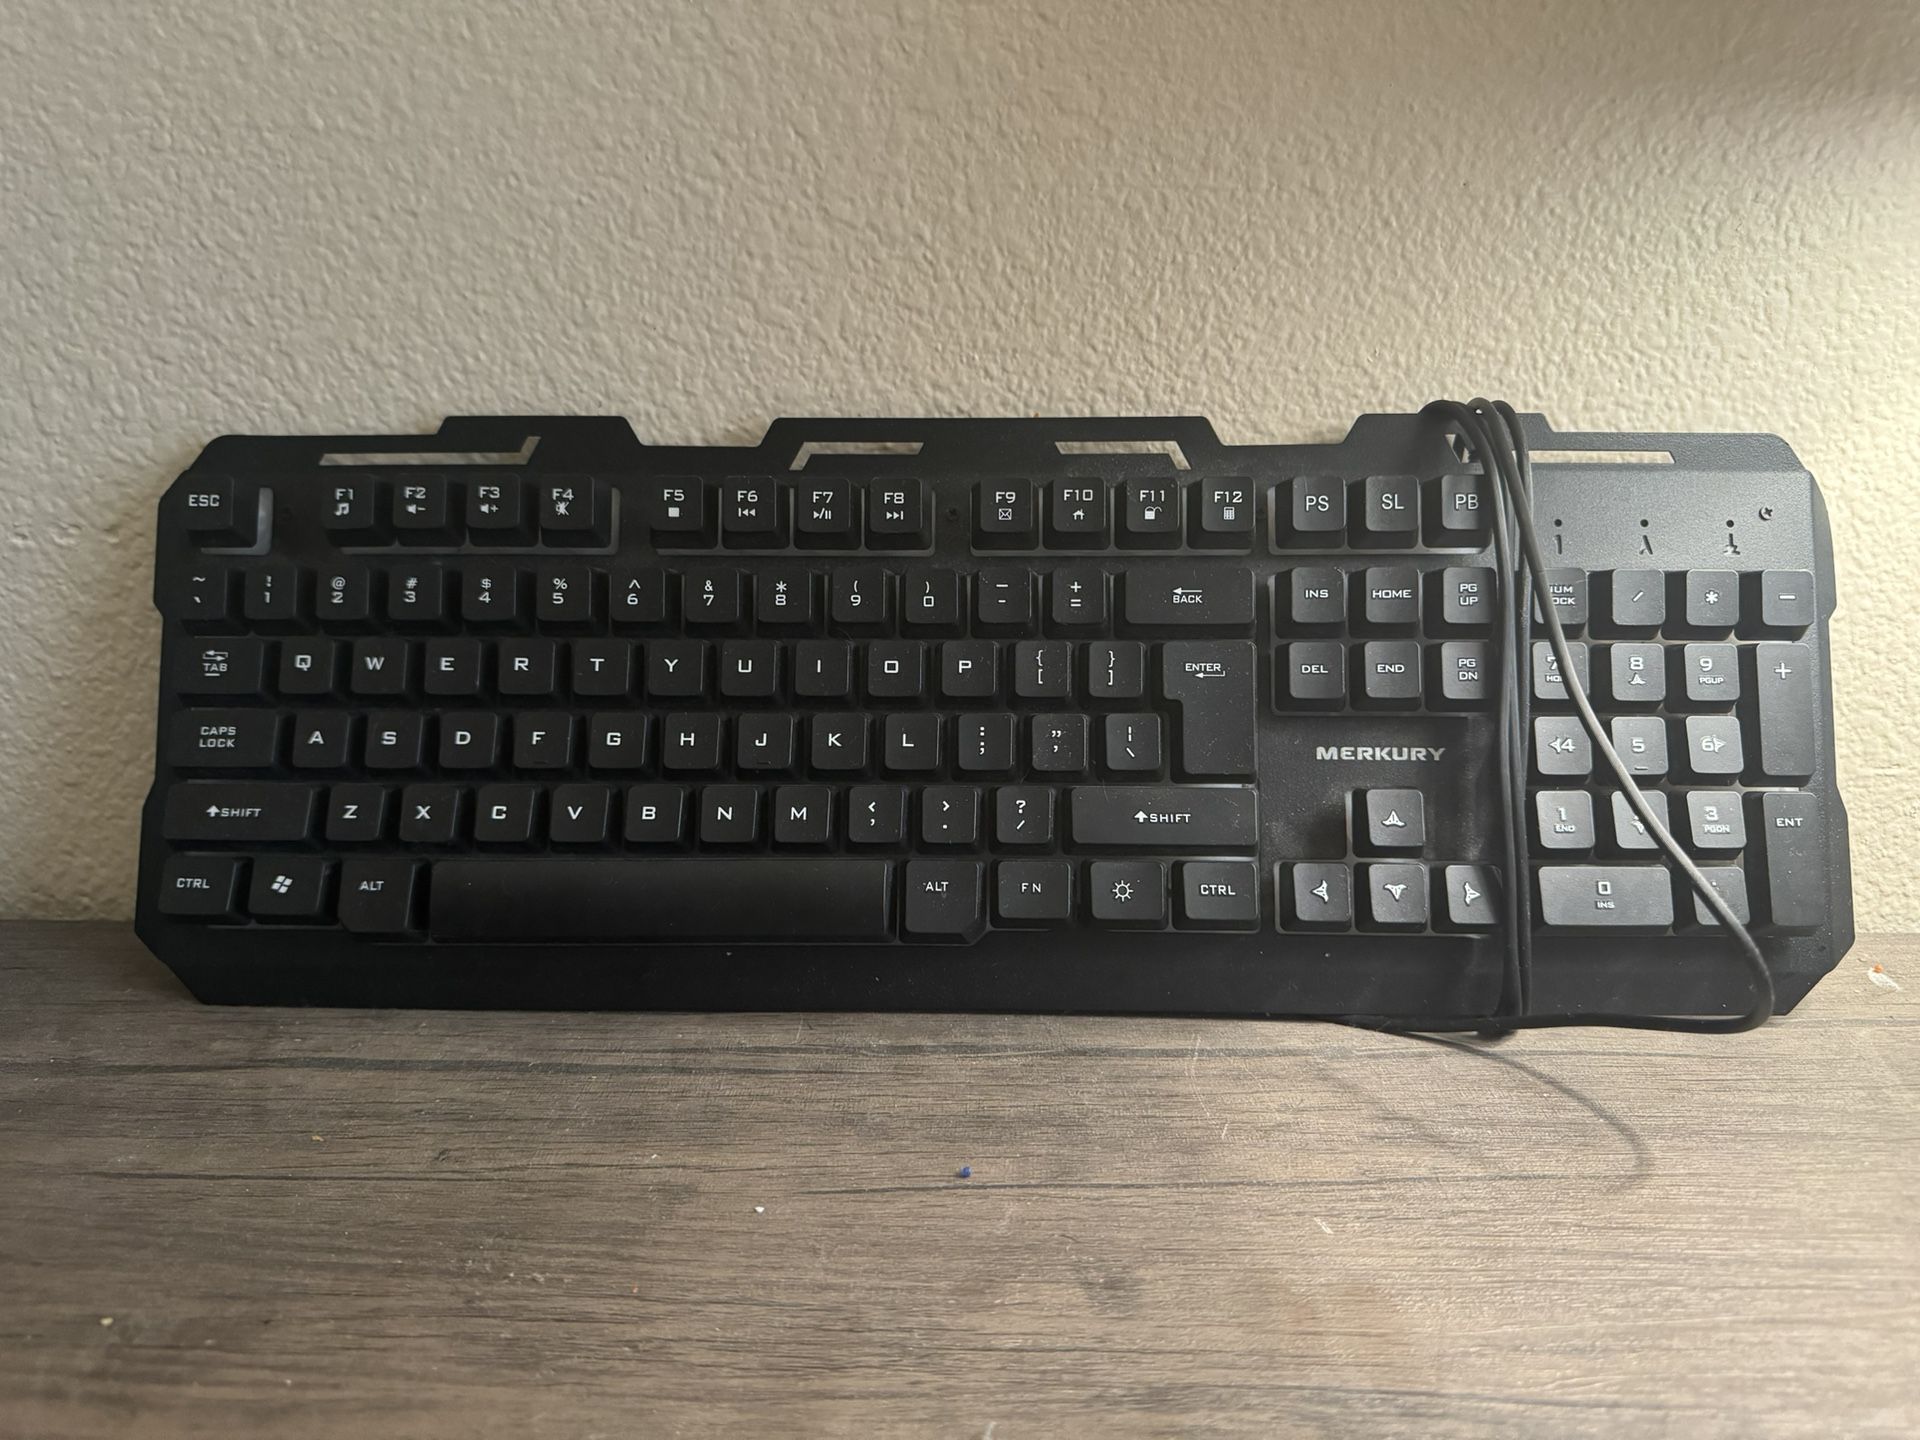 MERKURY (Gaming keyboard)